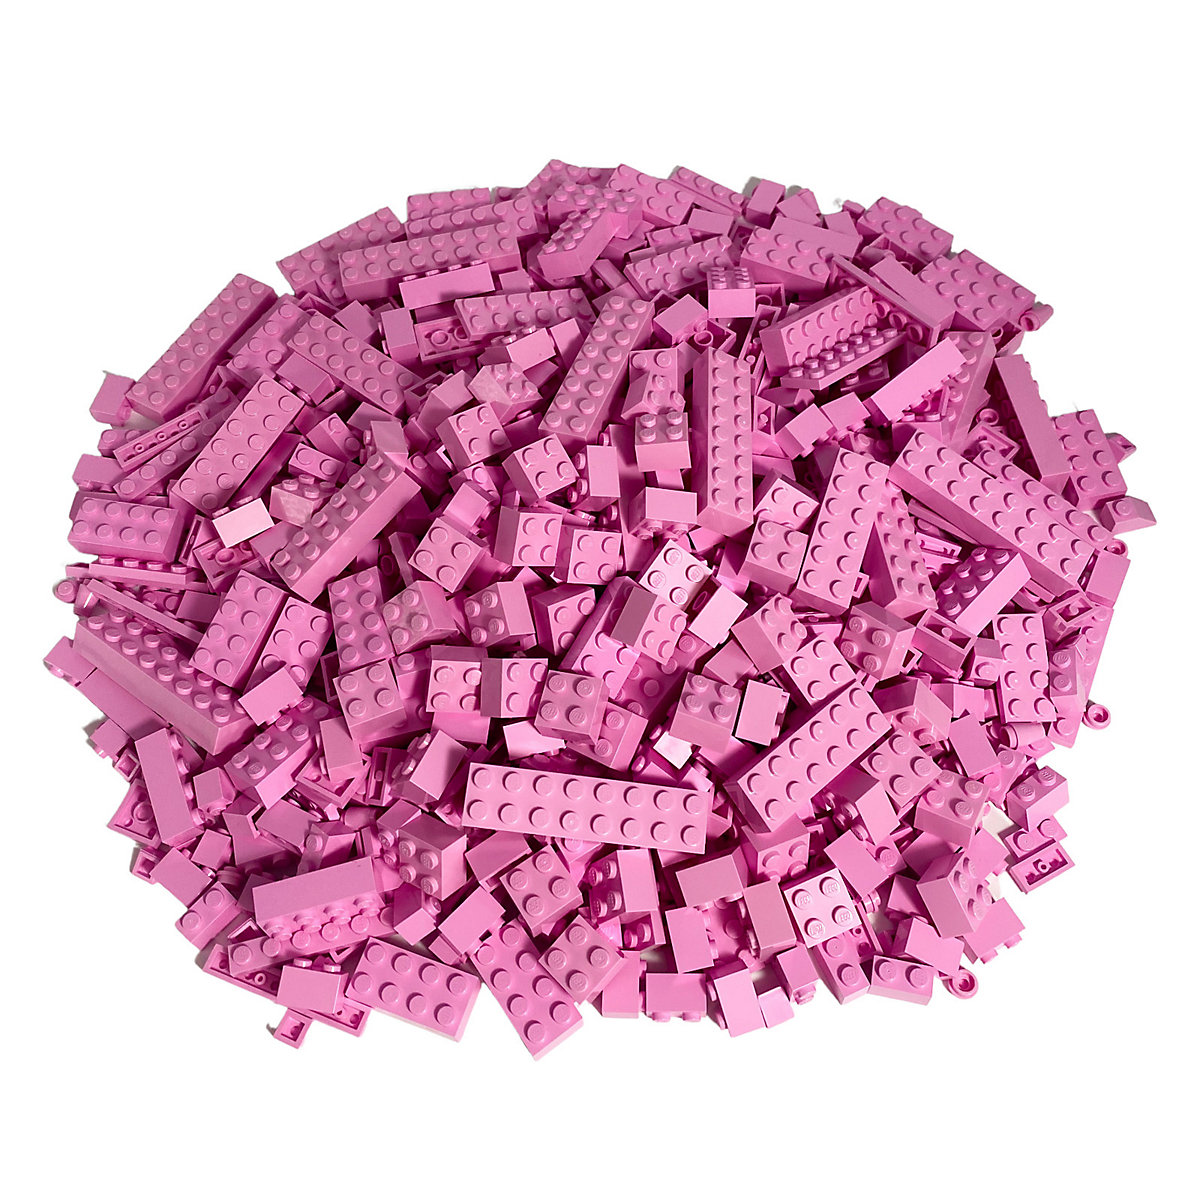 LEGO® Steine Rosa gemischt 500 Stück Pink bricks mix NEU